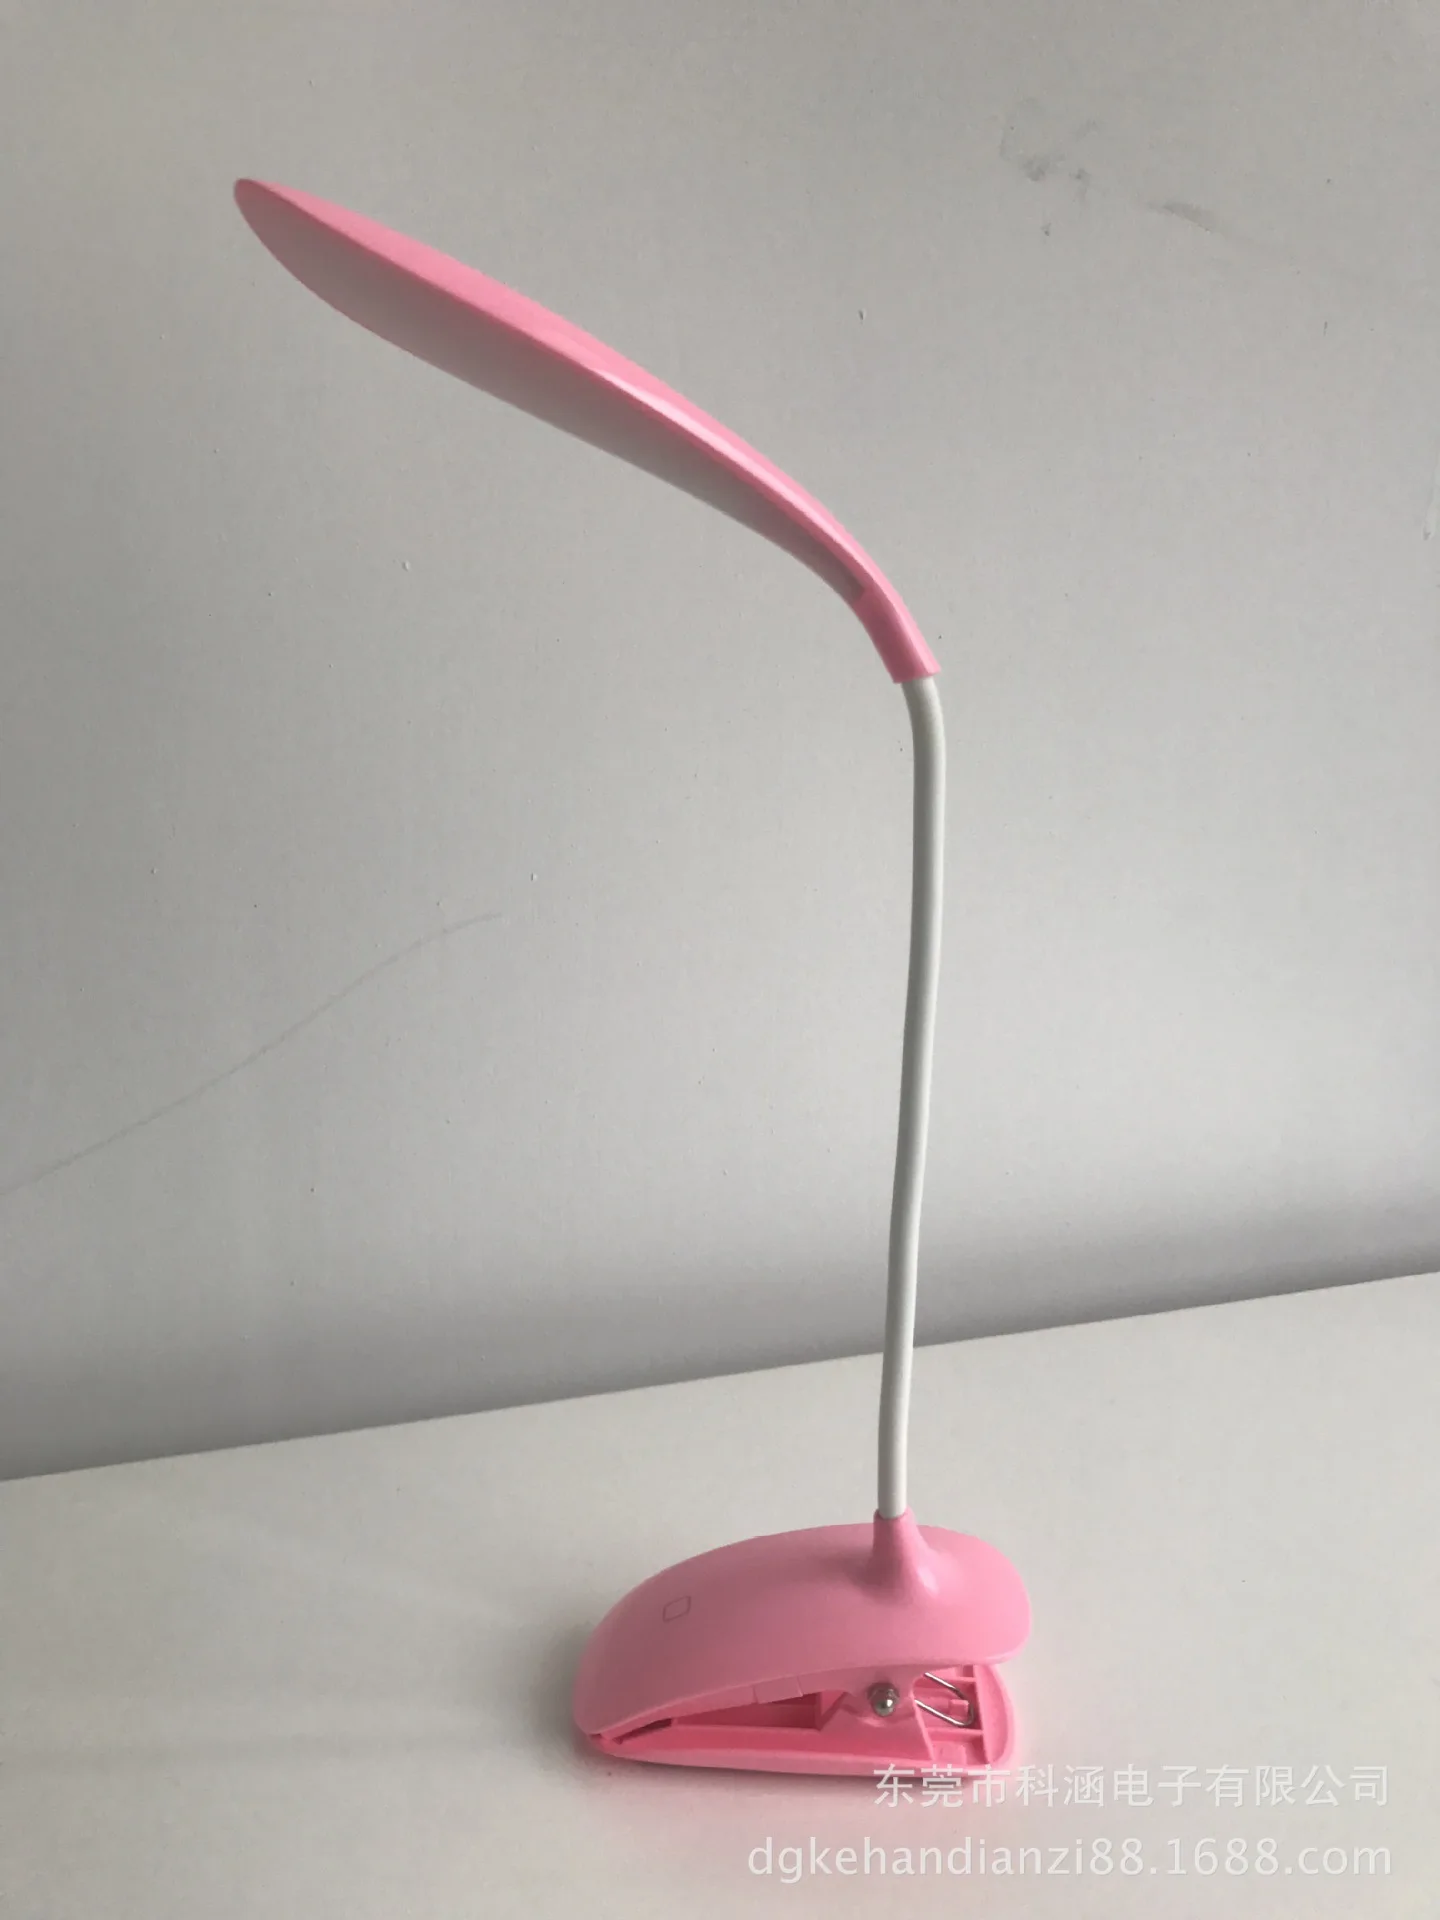 WENHSIN светодиодный глазной клип лампа настольная Студенческая обучение чтению свет usb зарядка сенсорный выключатель три переключения затемнения креативное освещение - Цвет корпуса: Розовый